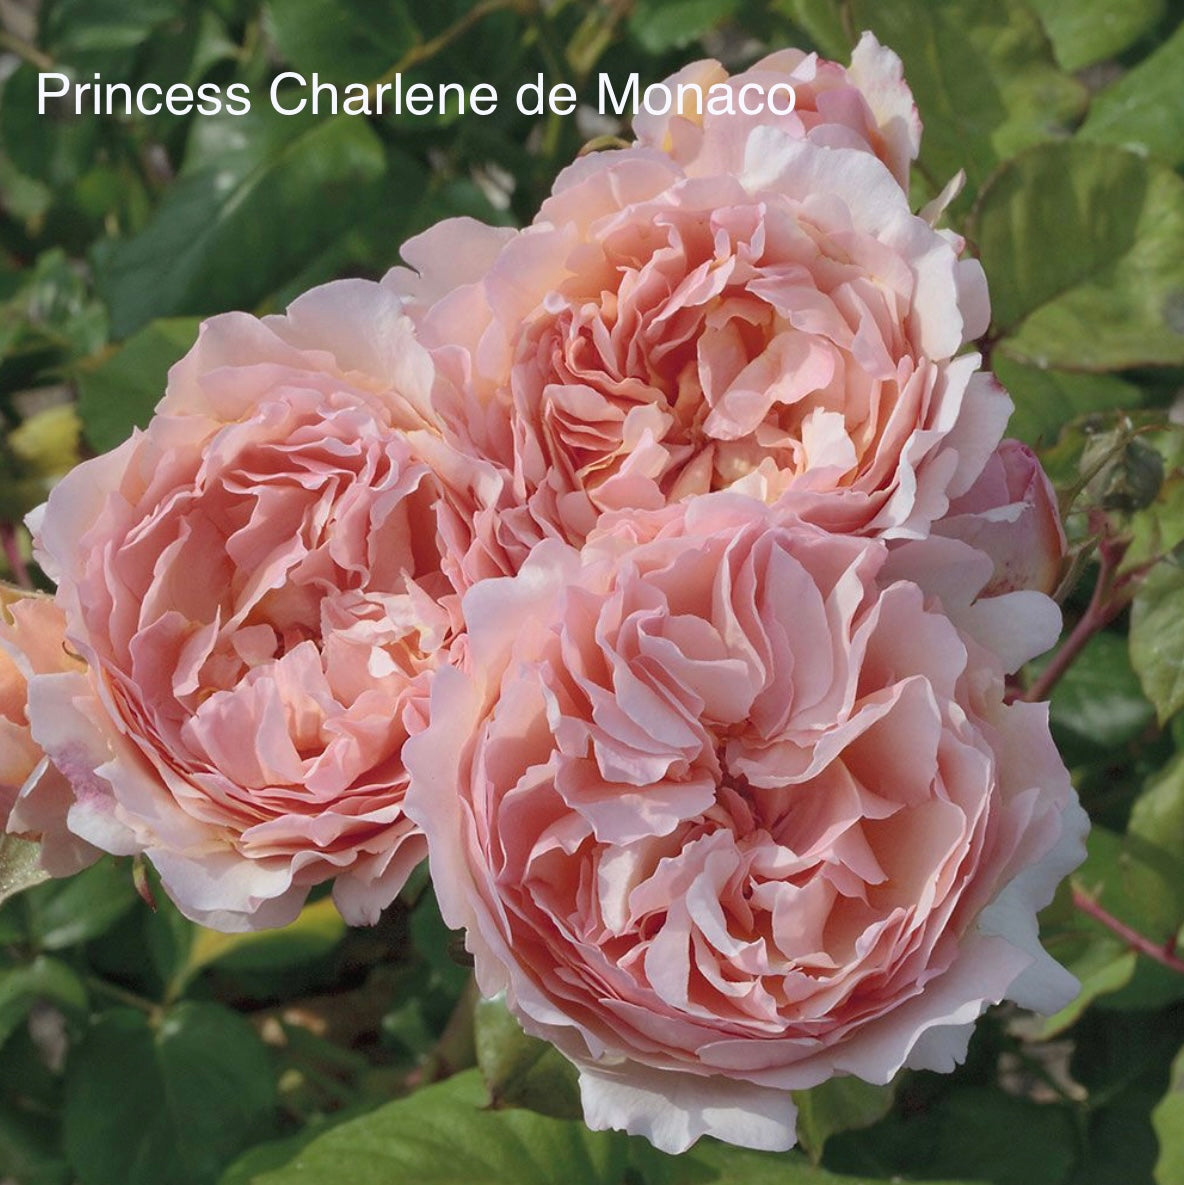 Princess Charlene de Monaco